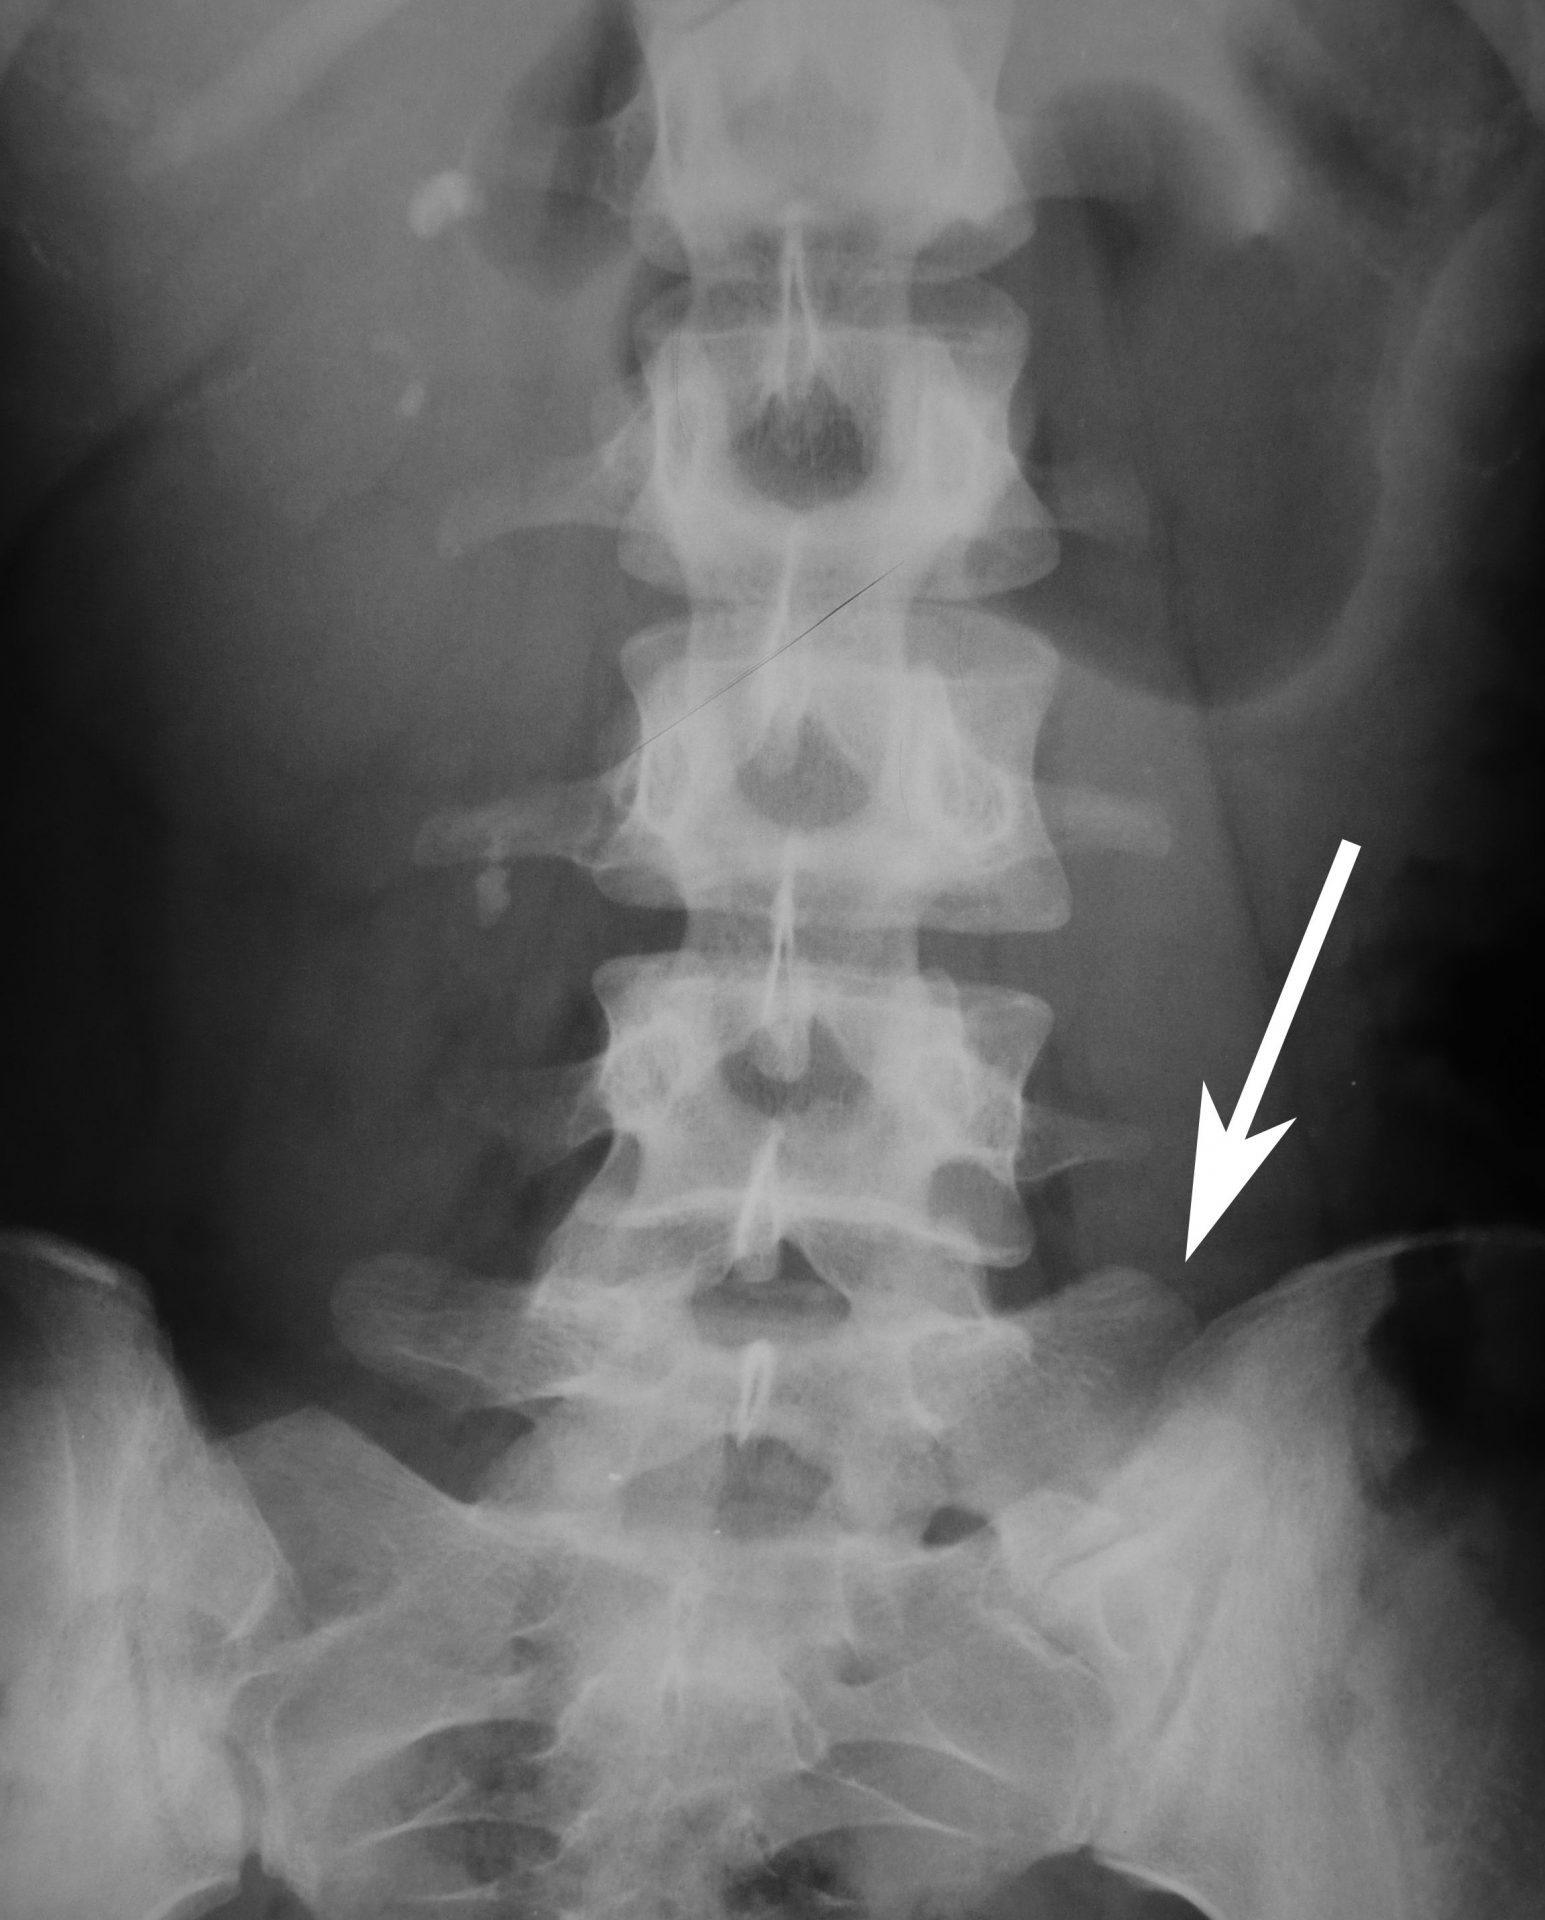 raio-x mostrando sacralização